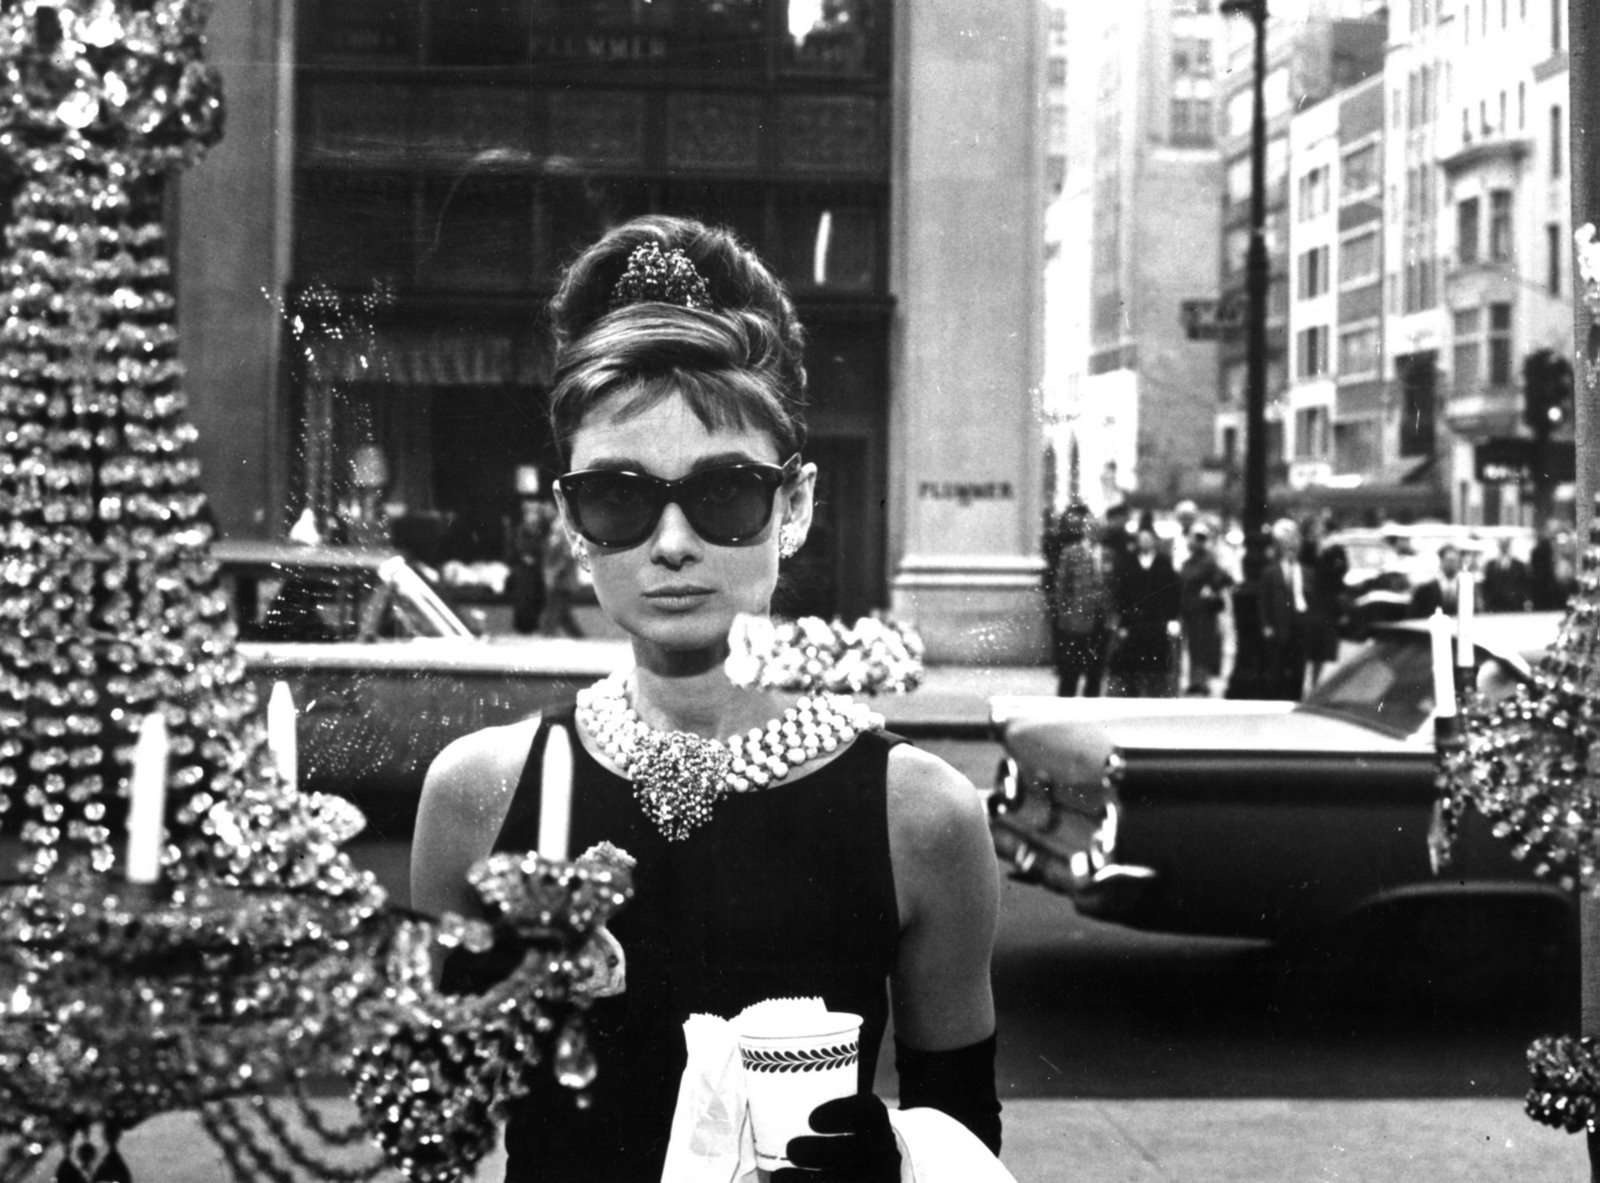 Baixar papéis de parede de desktop Audrey Hepburn HD